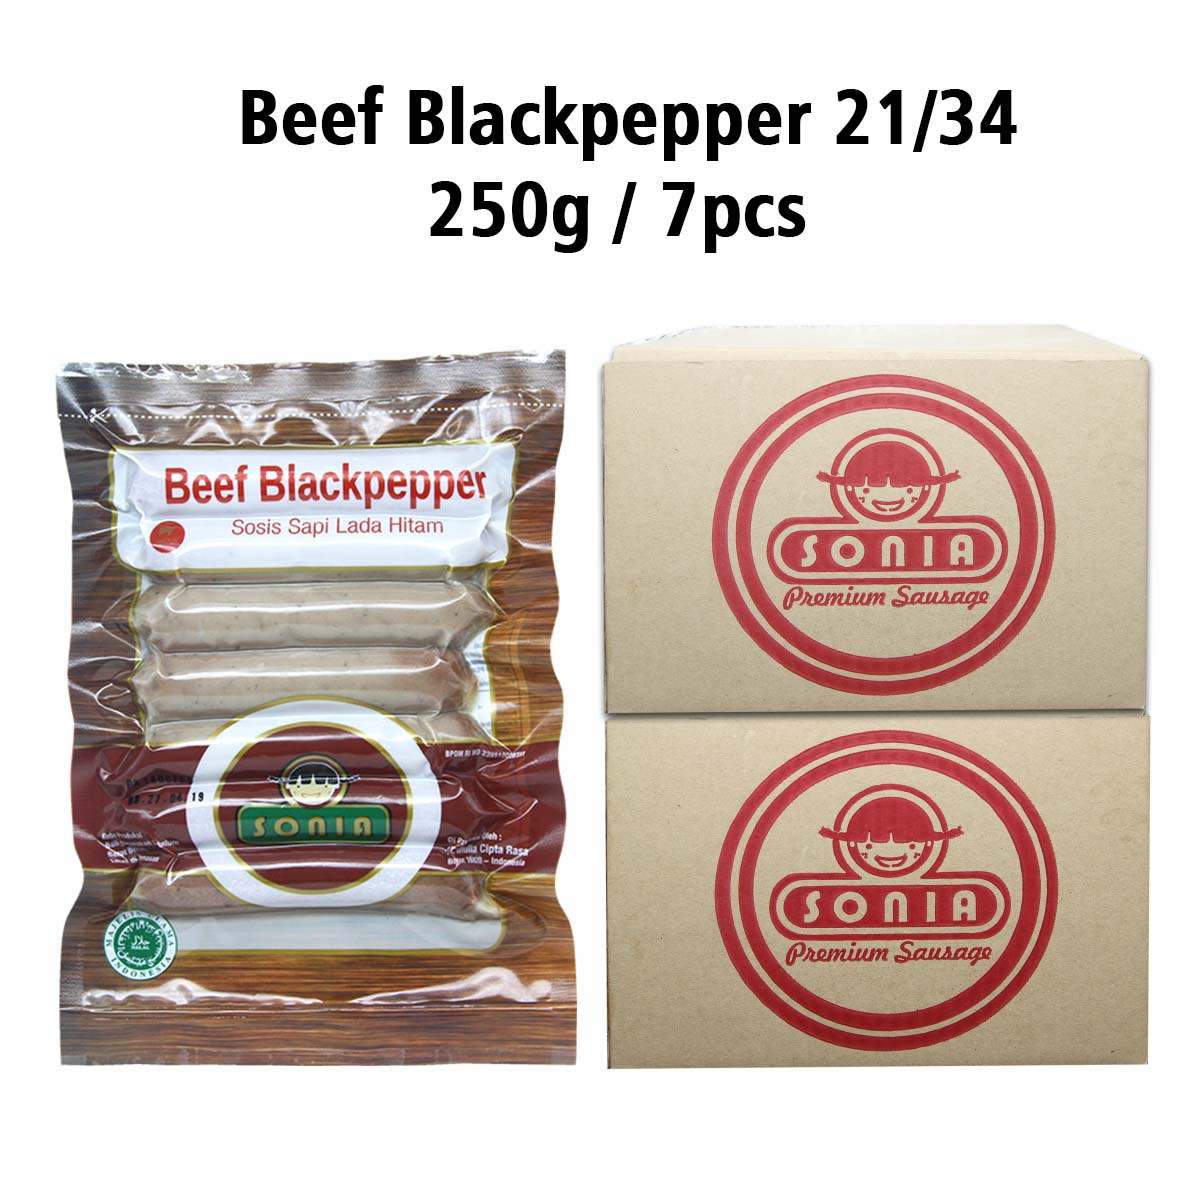 Beef Blackpepper